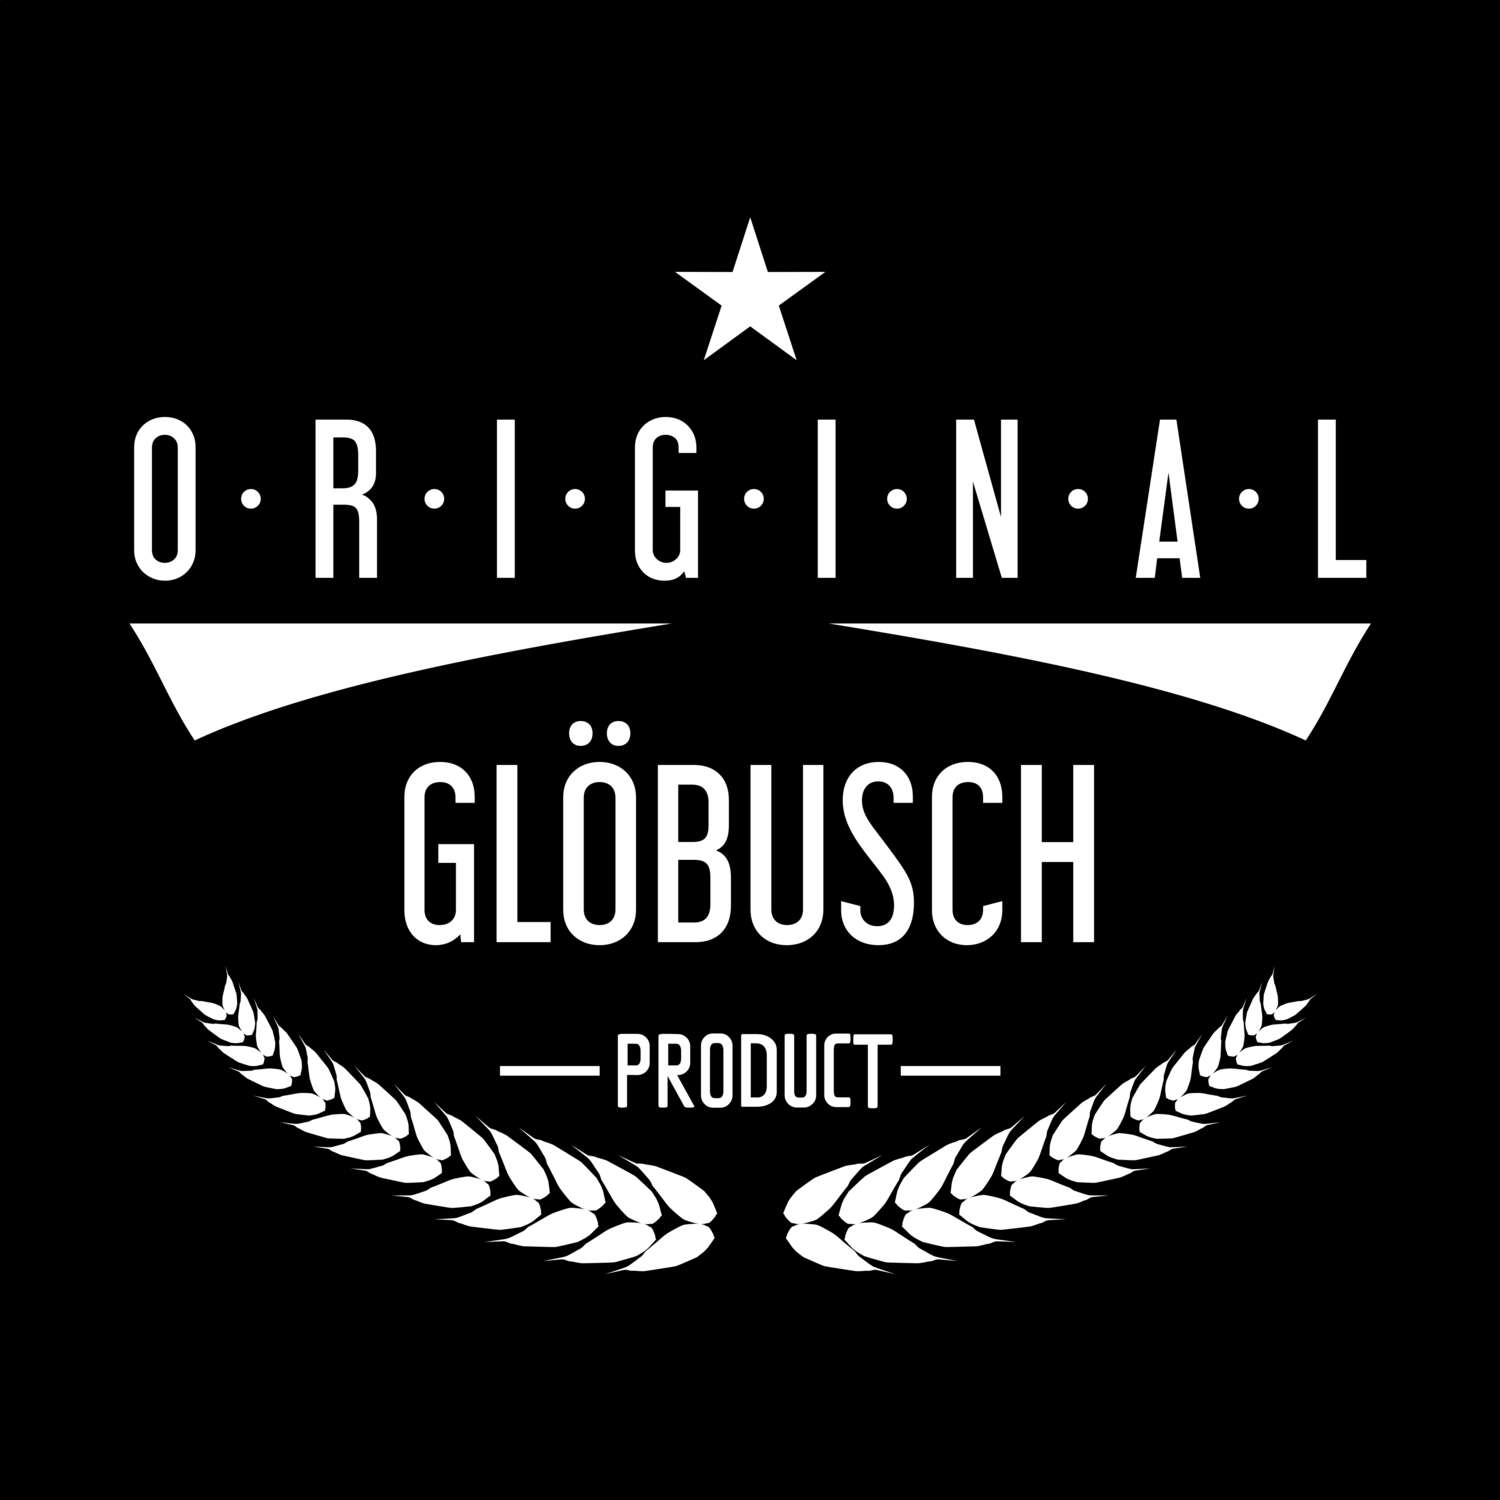 Glöbusch T-Shirt »Original Product«